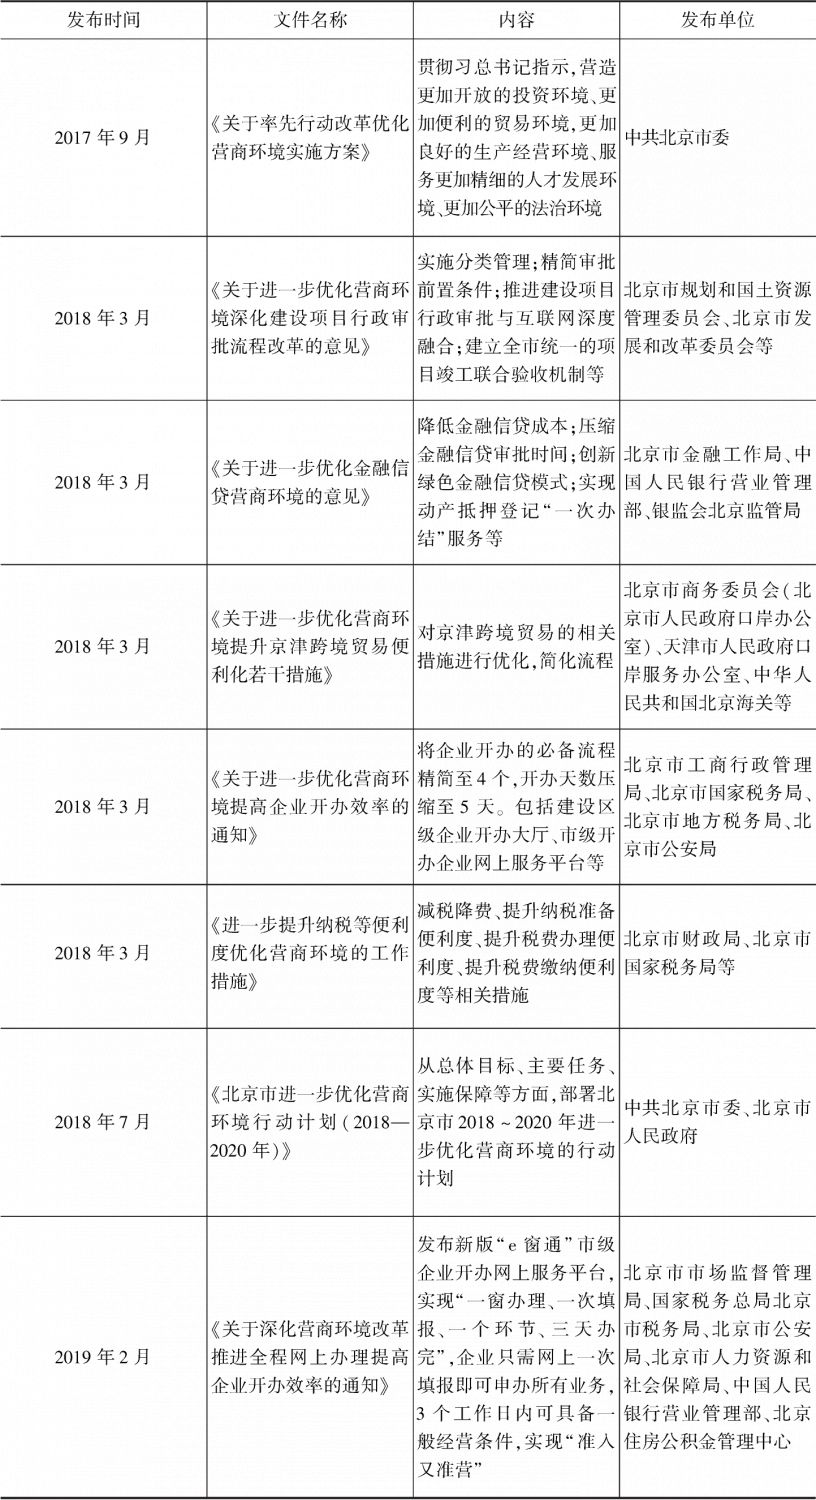 表13 北京市关于优化营商环境的部分相关文件列表